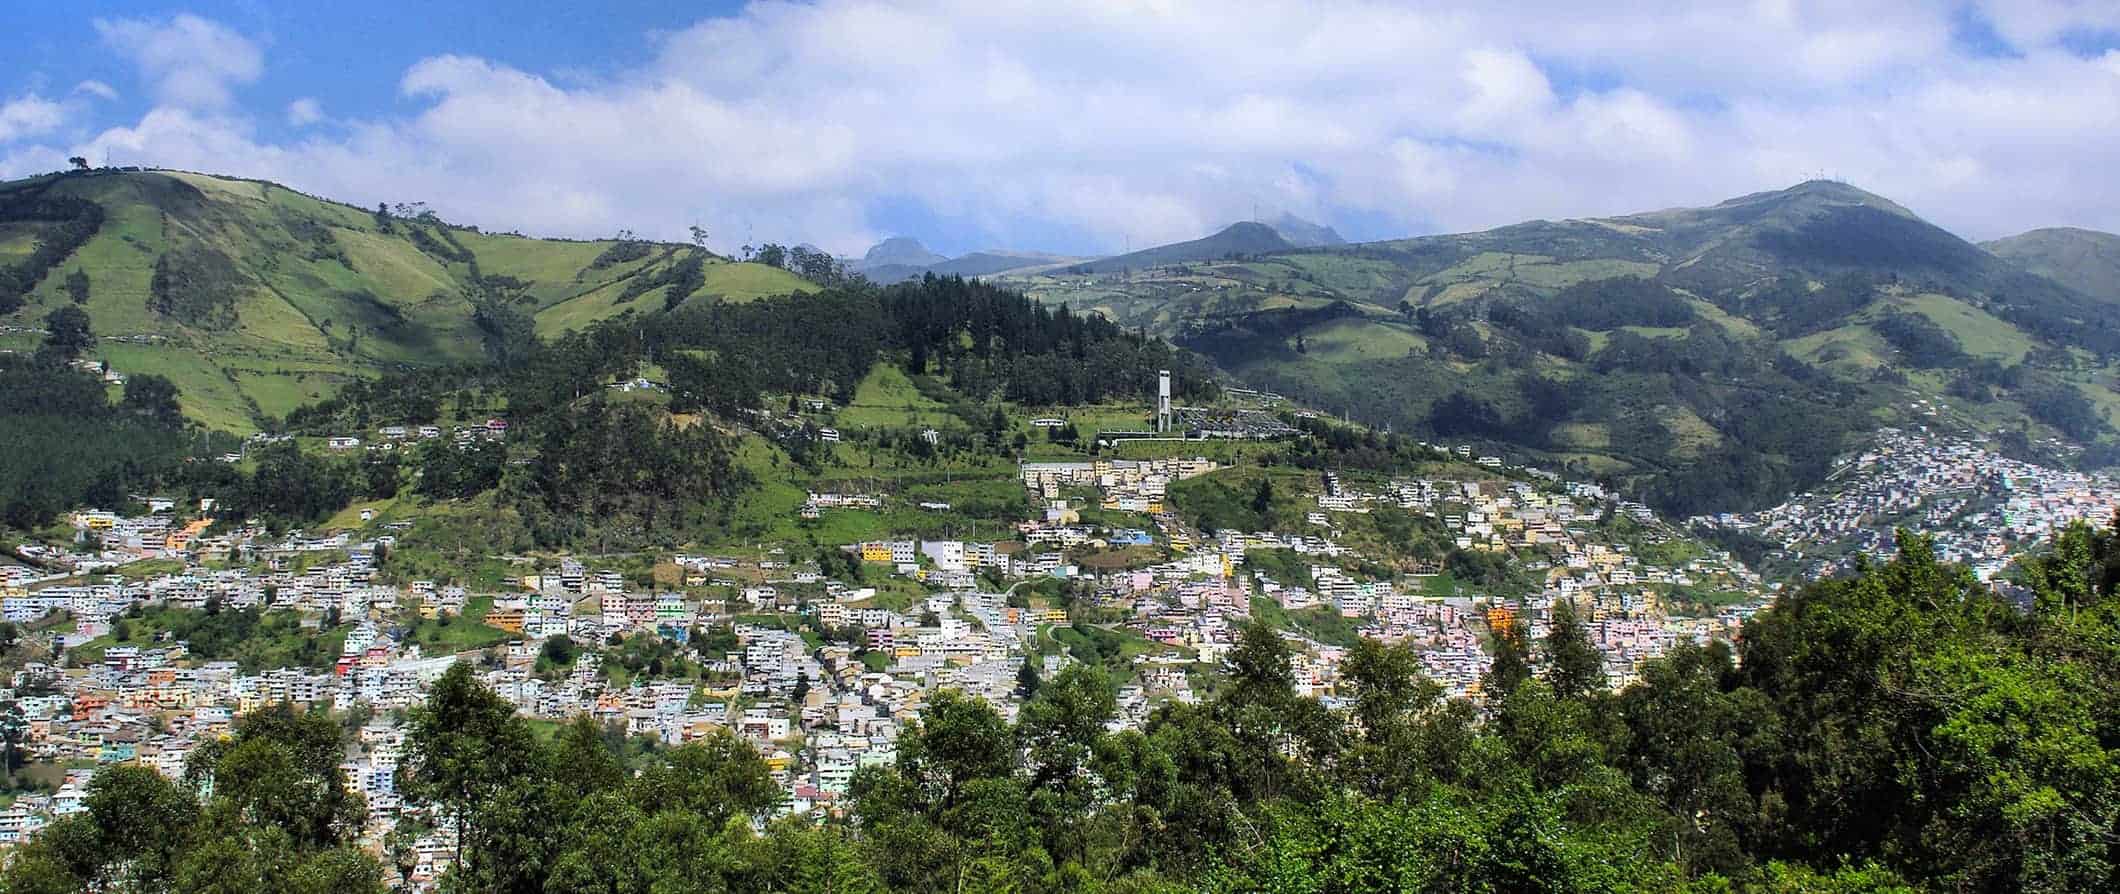 Vista do ar em Kito, Equador, cercado por colinas verdes em um dia ensolarado de verão